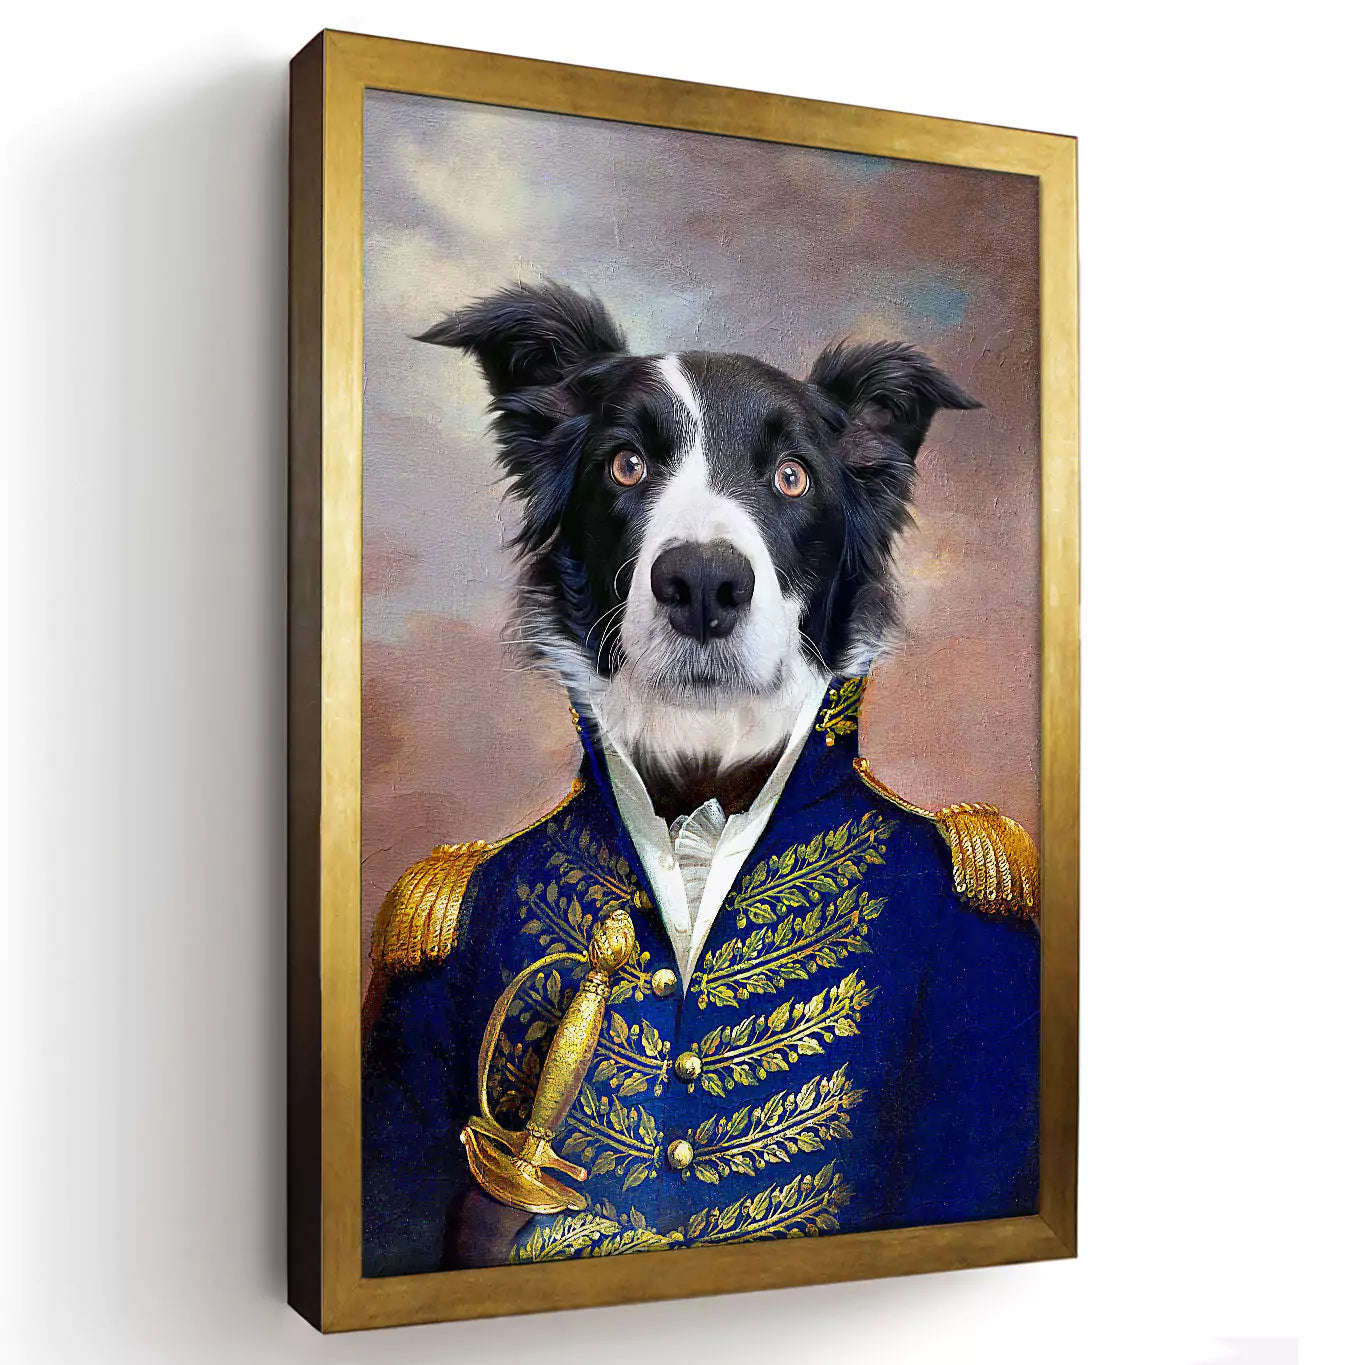 general dog portrait, admiral dog print, custom dog portrait, dogs potrait, dog portrait art, royal dog gold frame